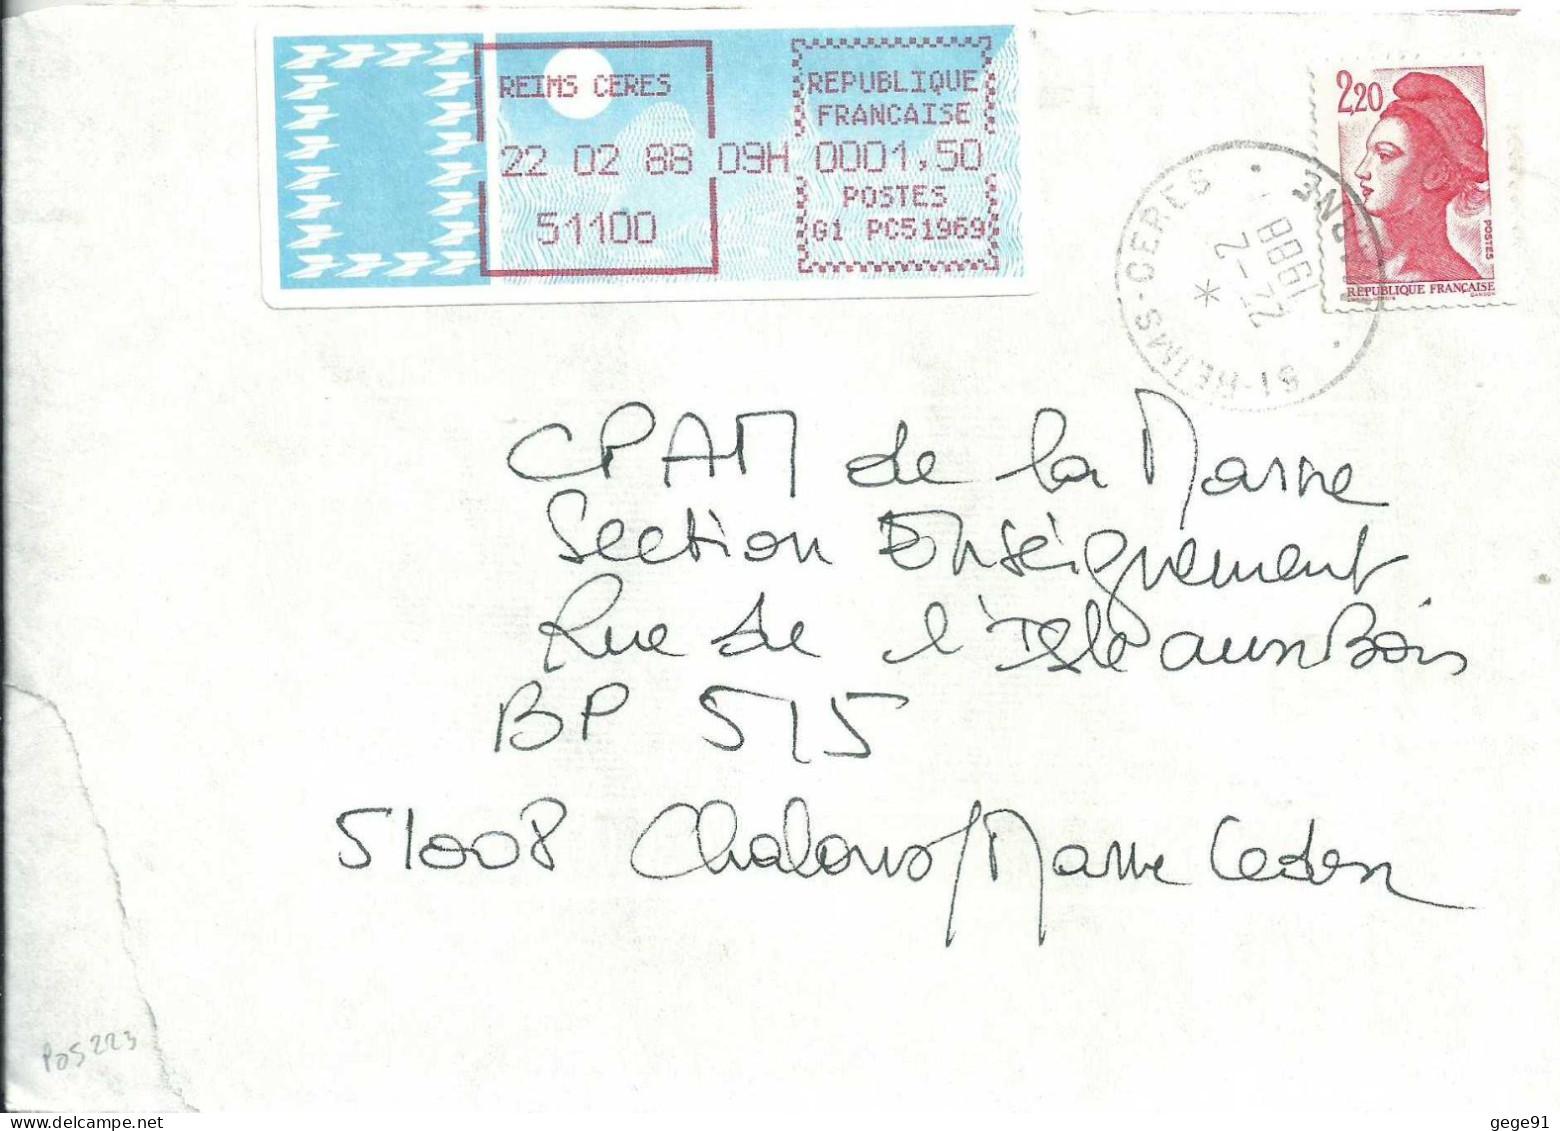 Vignette D'affranchissement - MOG - Reims Céres - Marne - Complément D'affranchissement - 1985 « Carrier » Paper